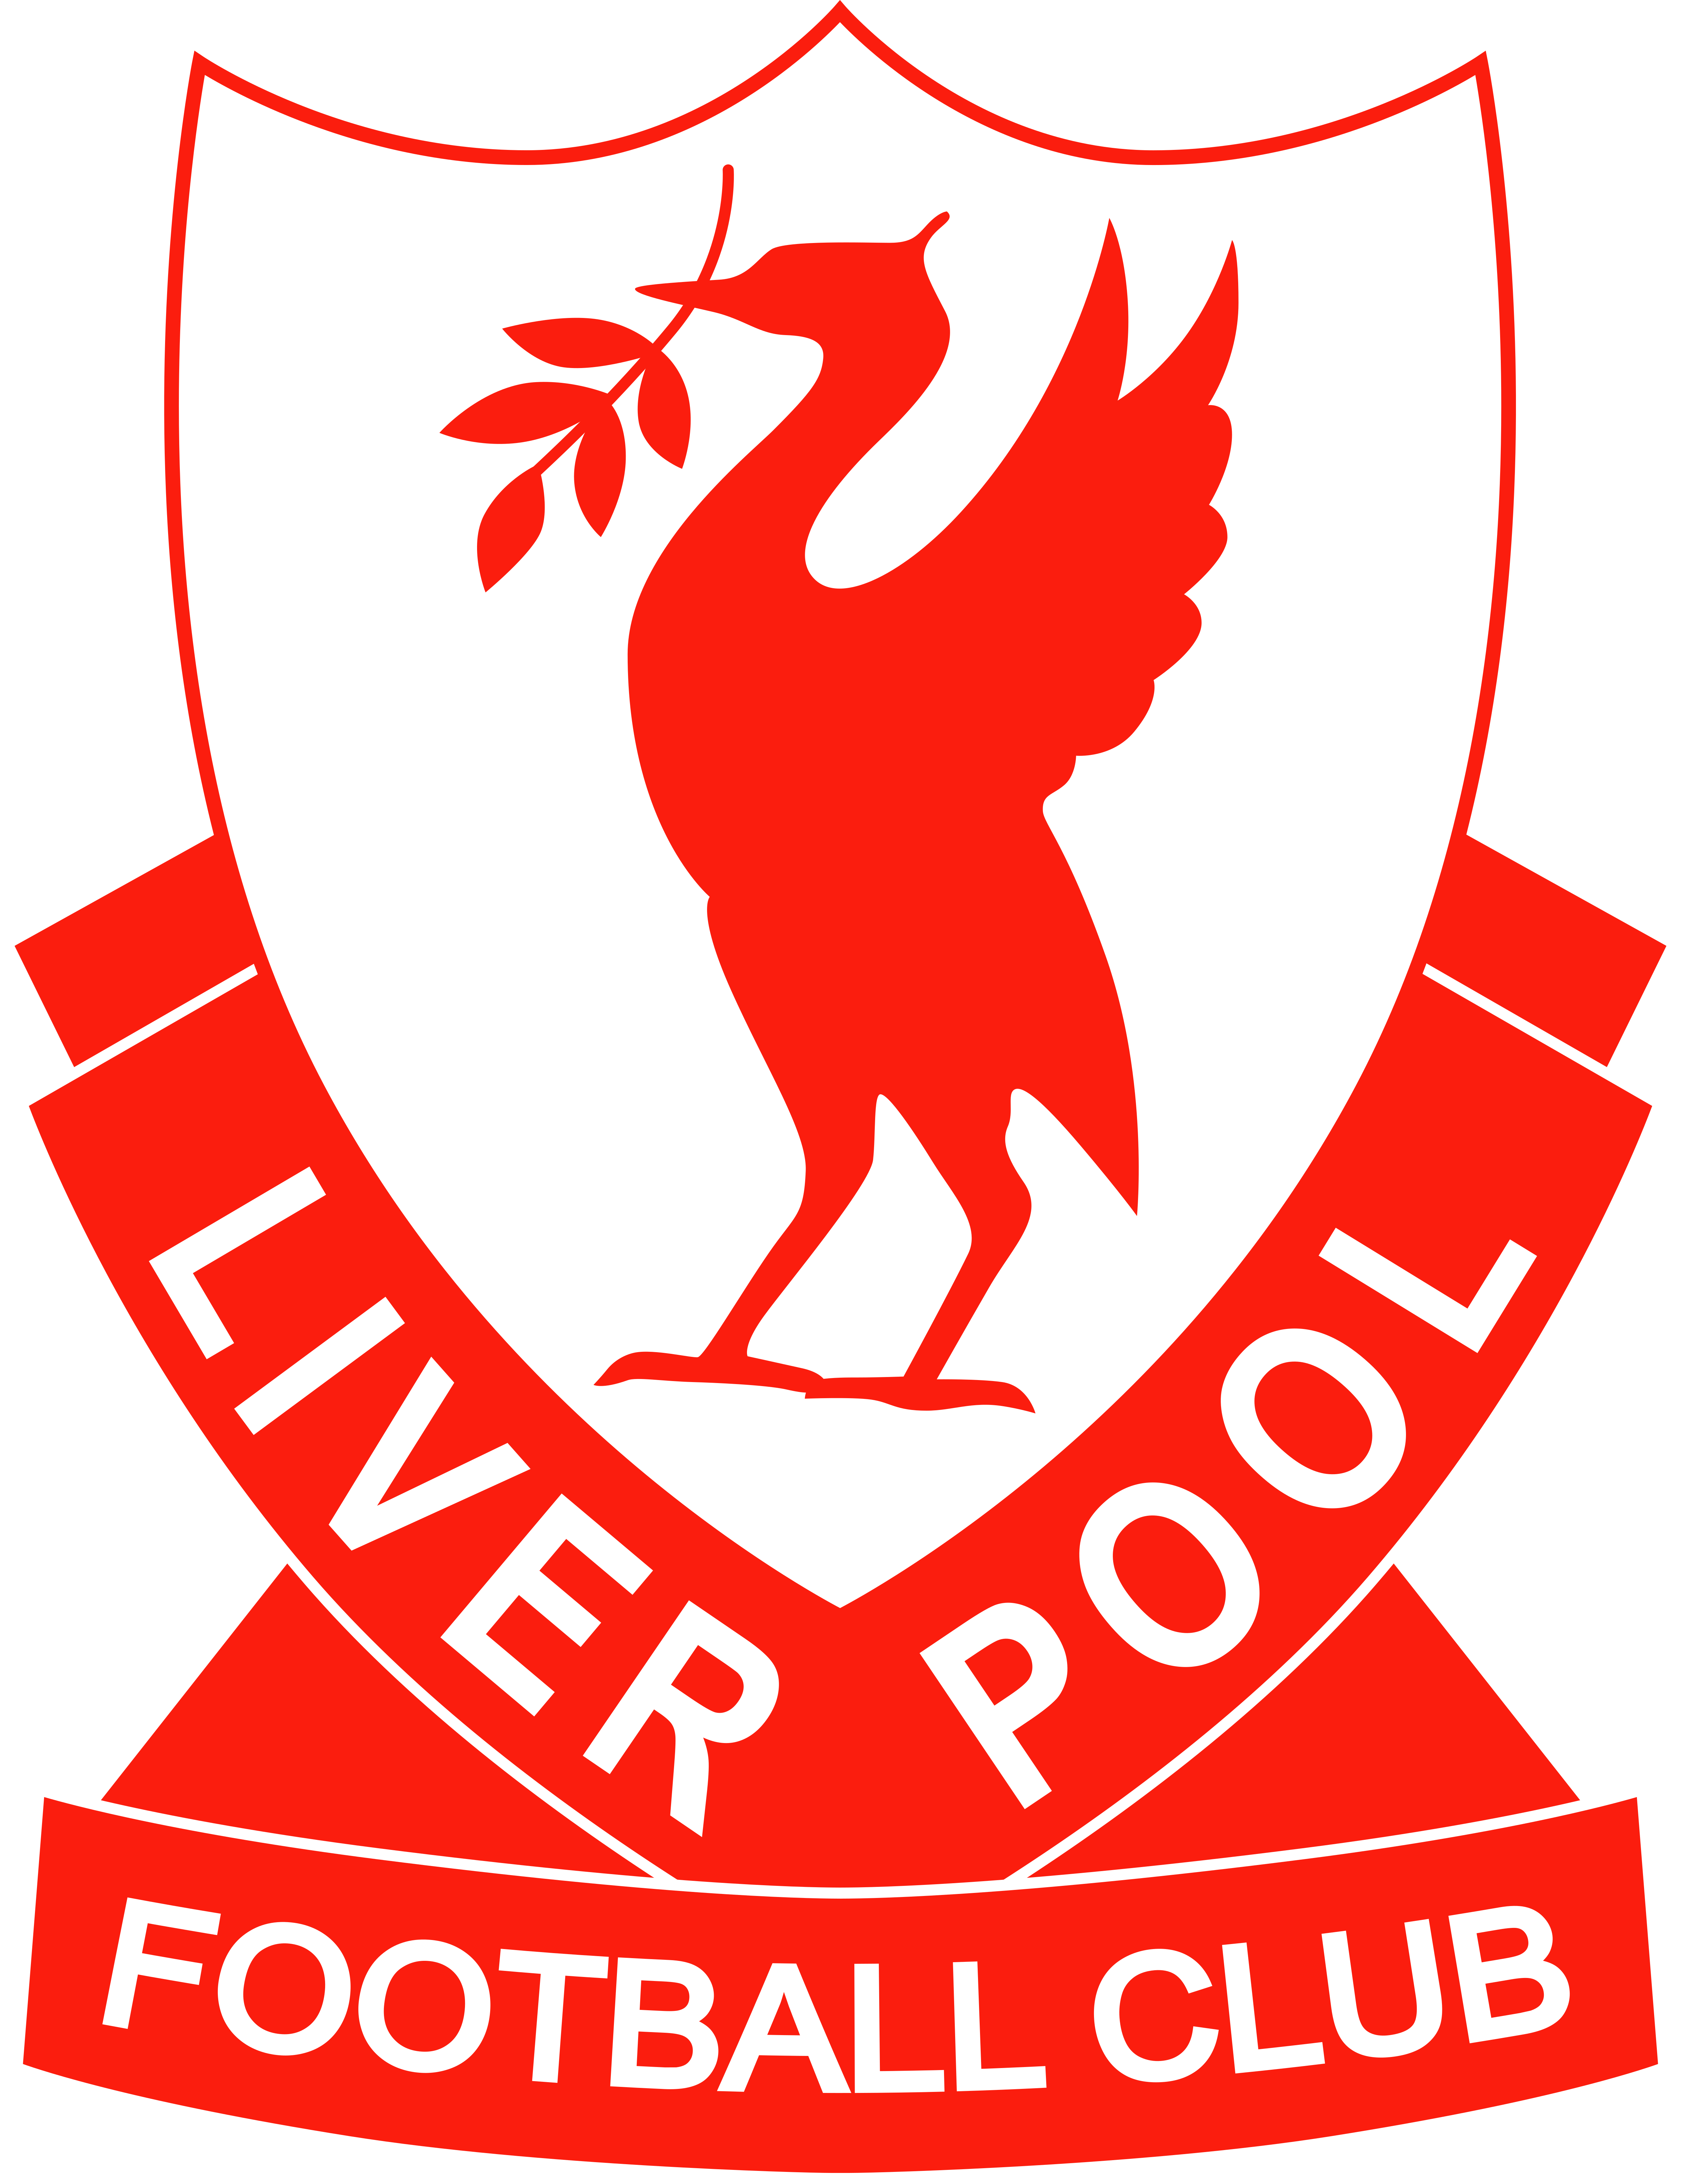 Hình ảnh logo of liverpool fc mới nhất và hoàn hảo cho fan hâm mộ